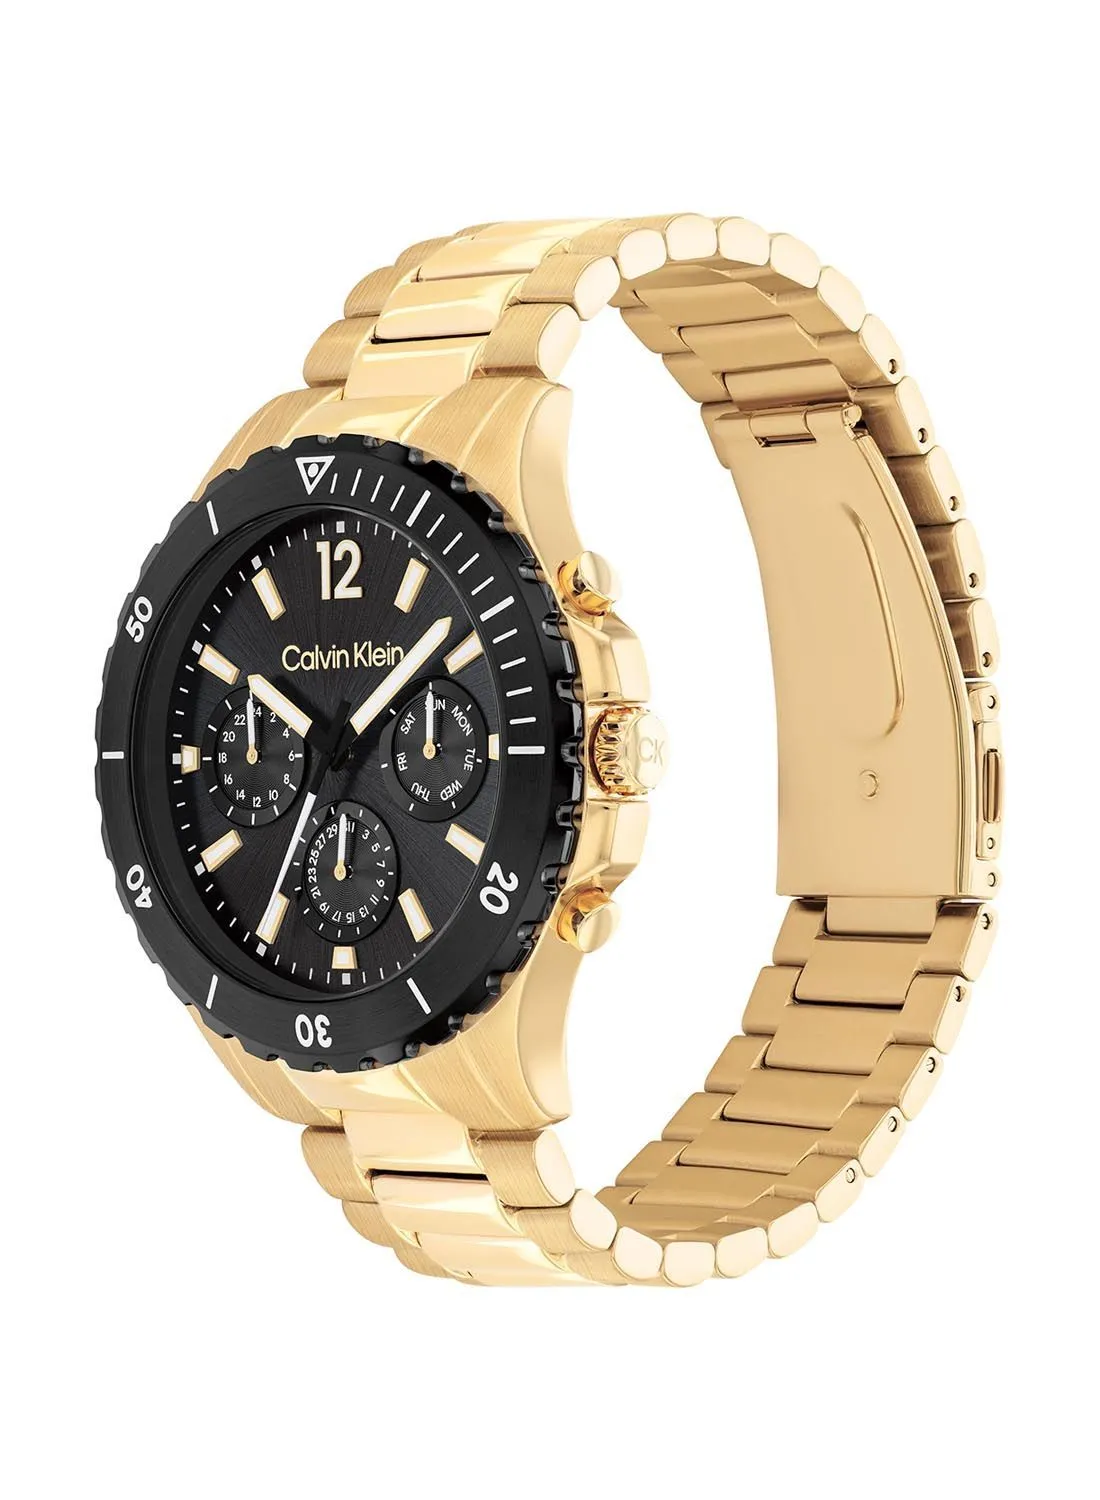 CALVIN KLEIN Analog Round Waterproof  Wrist Watch With Gold Strap 25200116